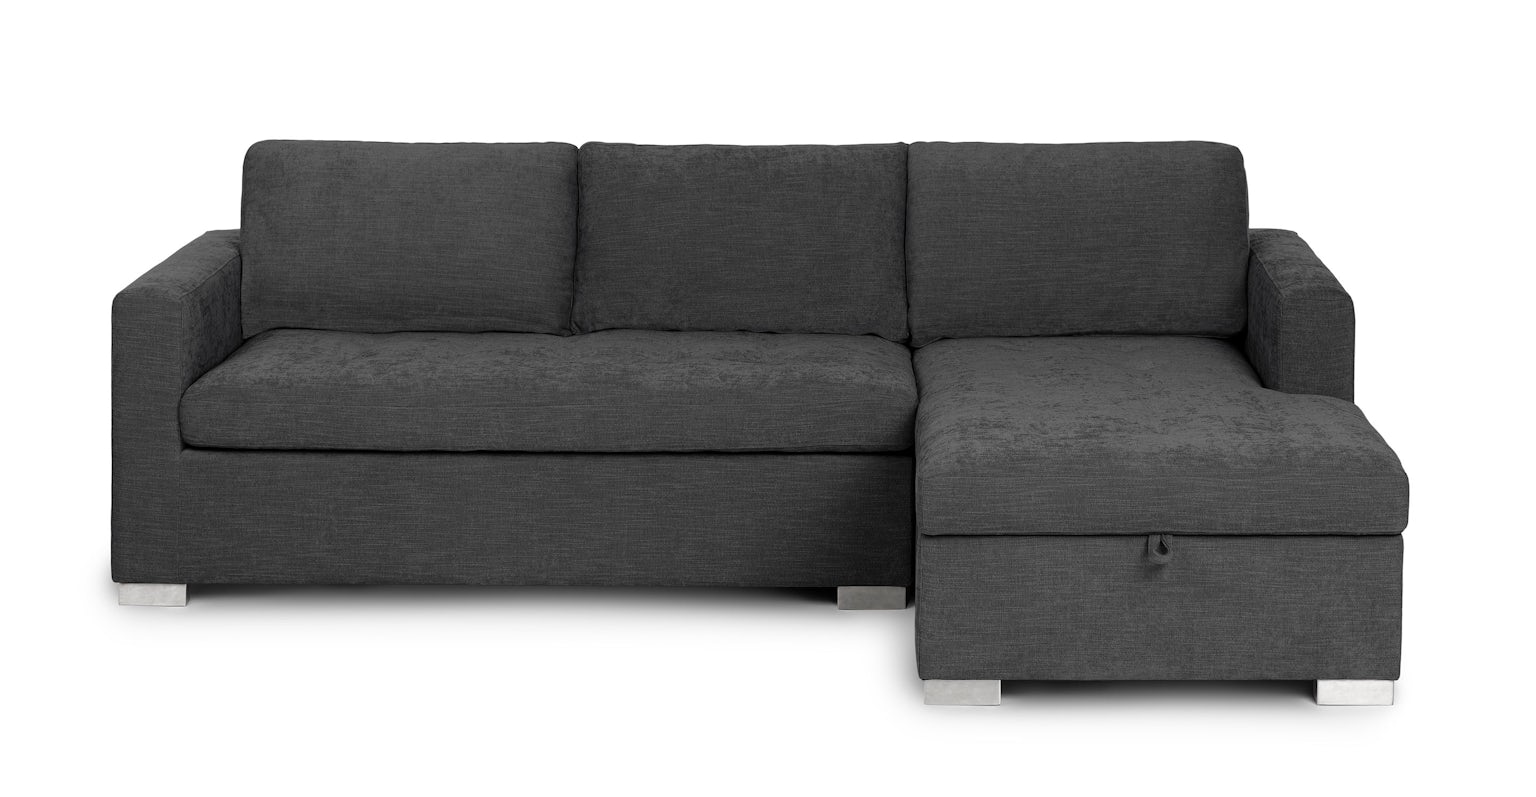 soma twilight gray right sofa bed